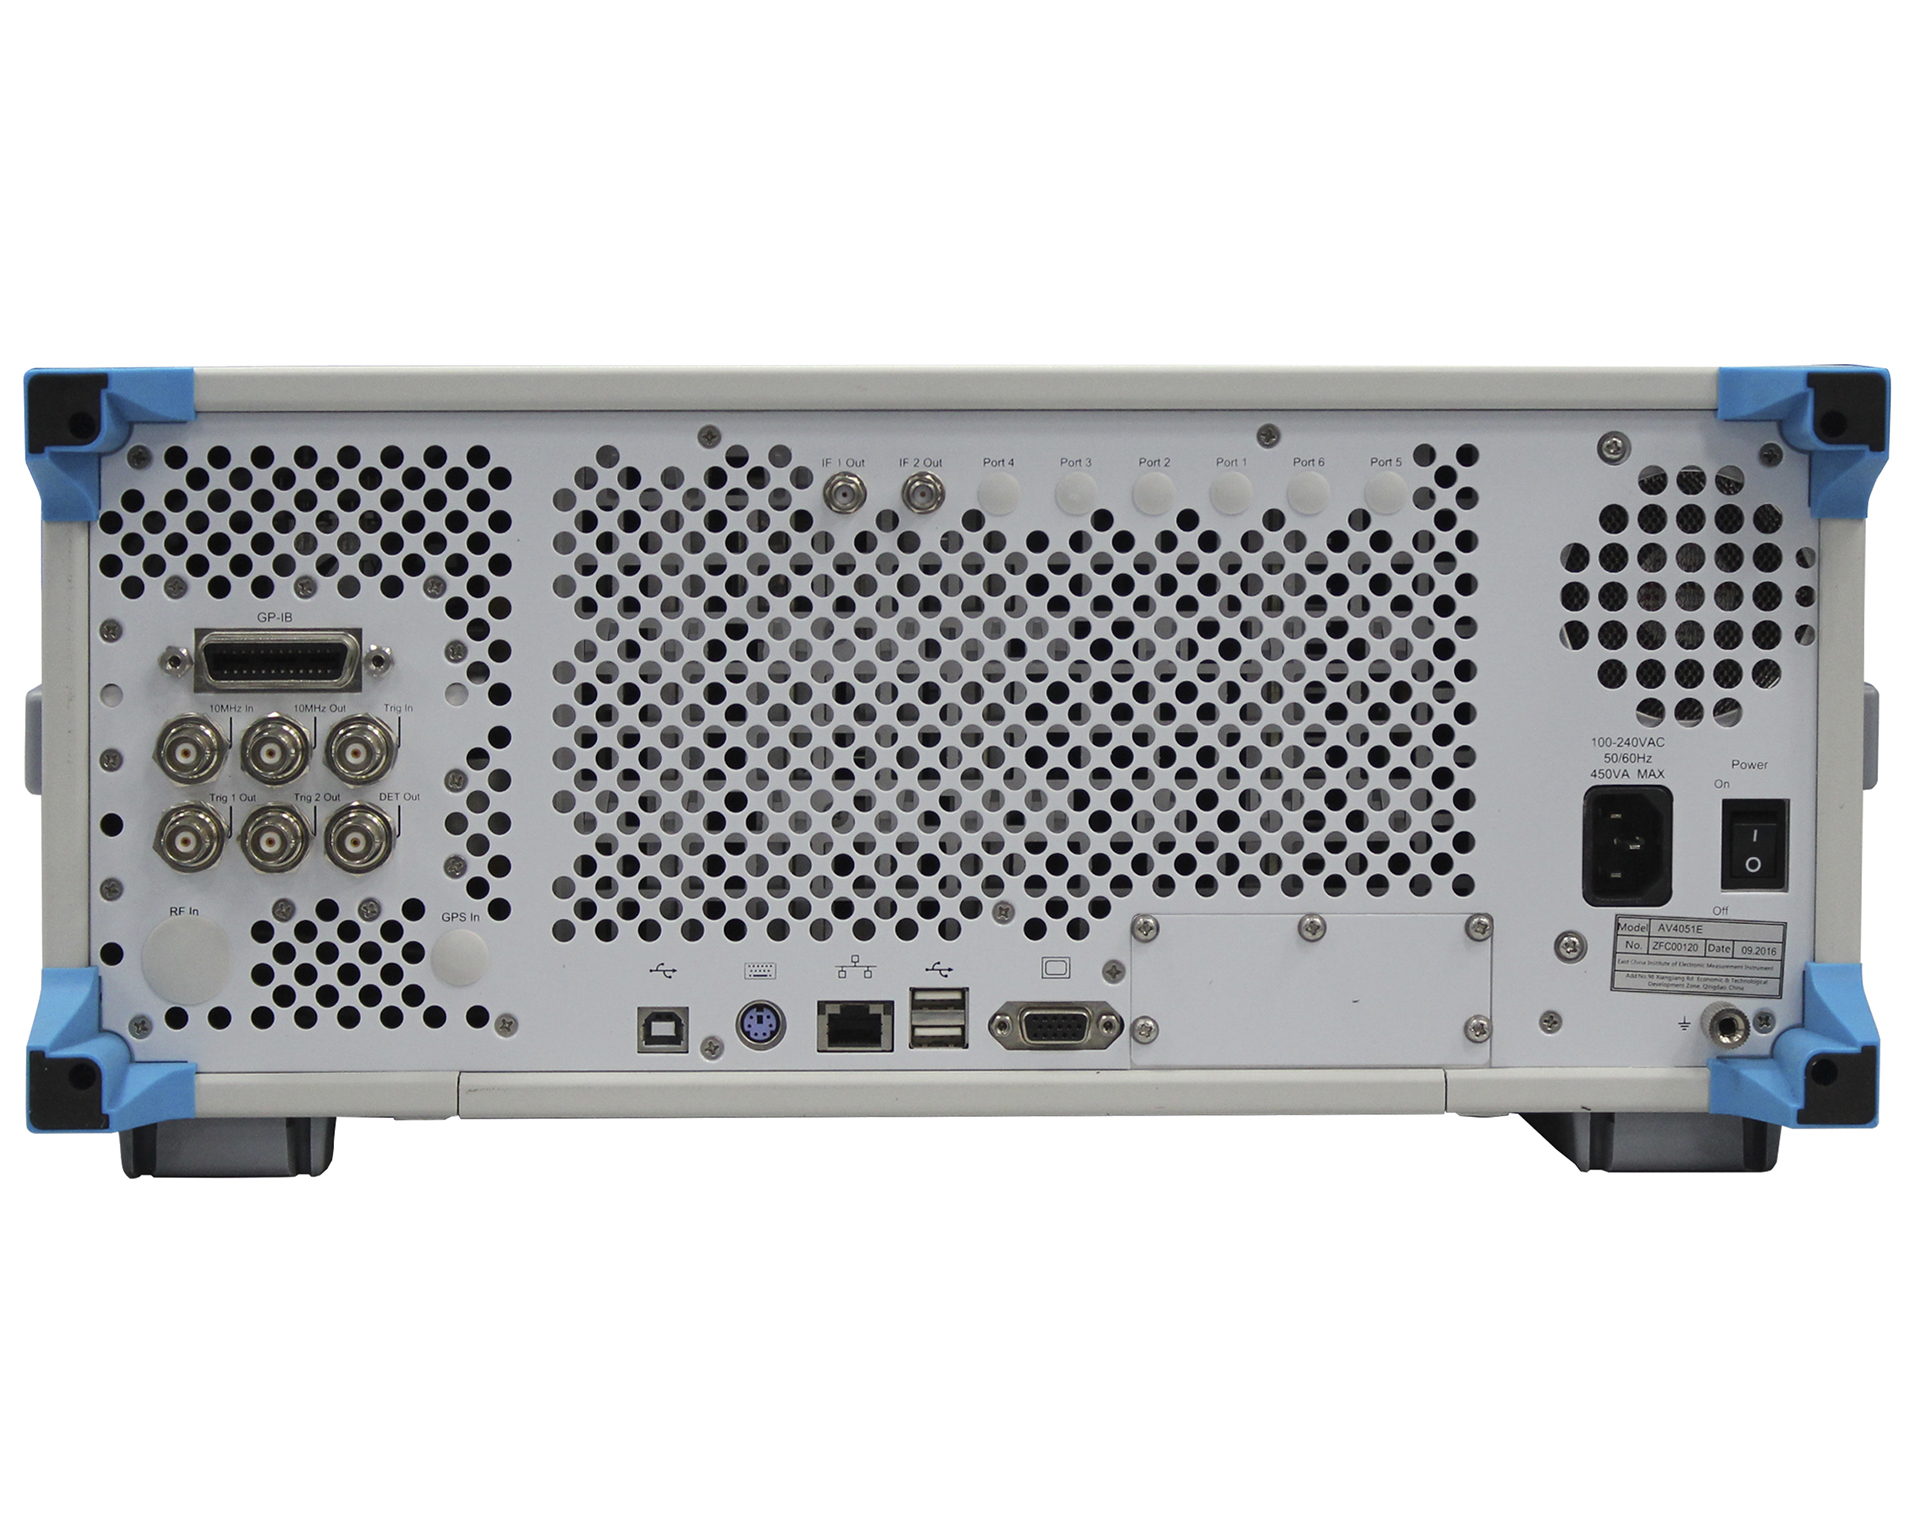 Анализаторы спектраCeyear серии AV4051:AV4051A/B/C/D/E/F/G/Hс диапазоном частот от 3 Гц до 50 ГГц